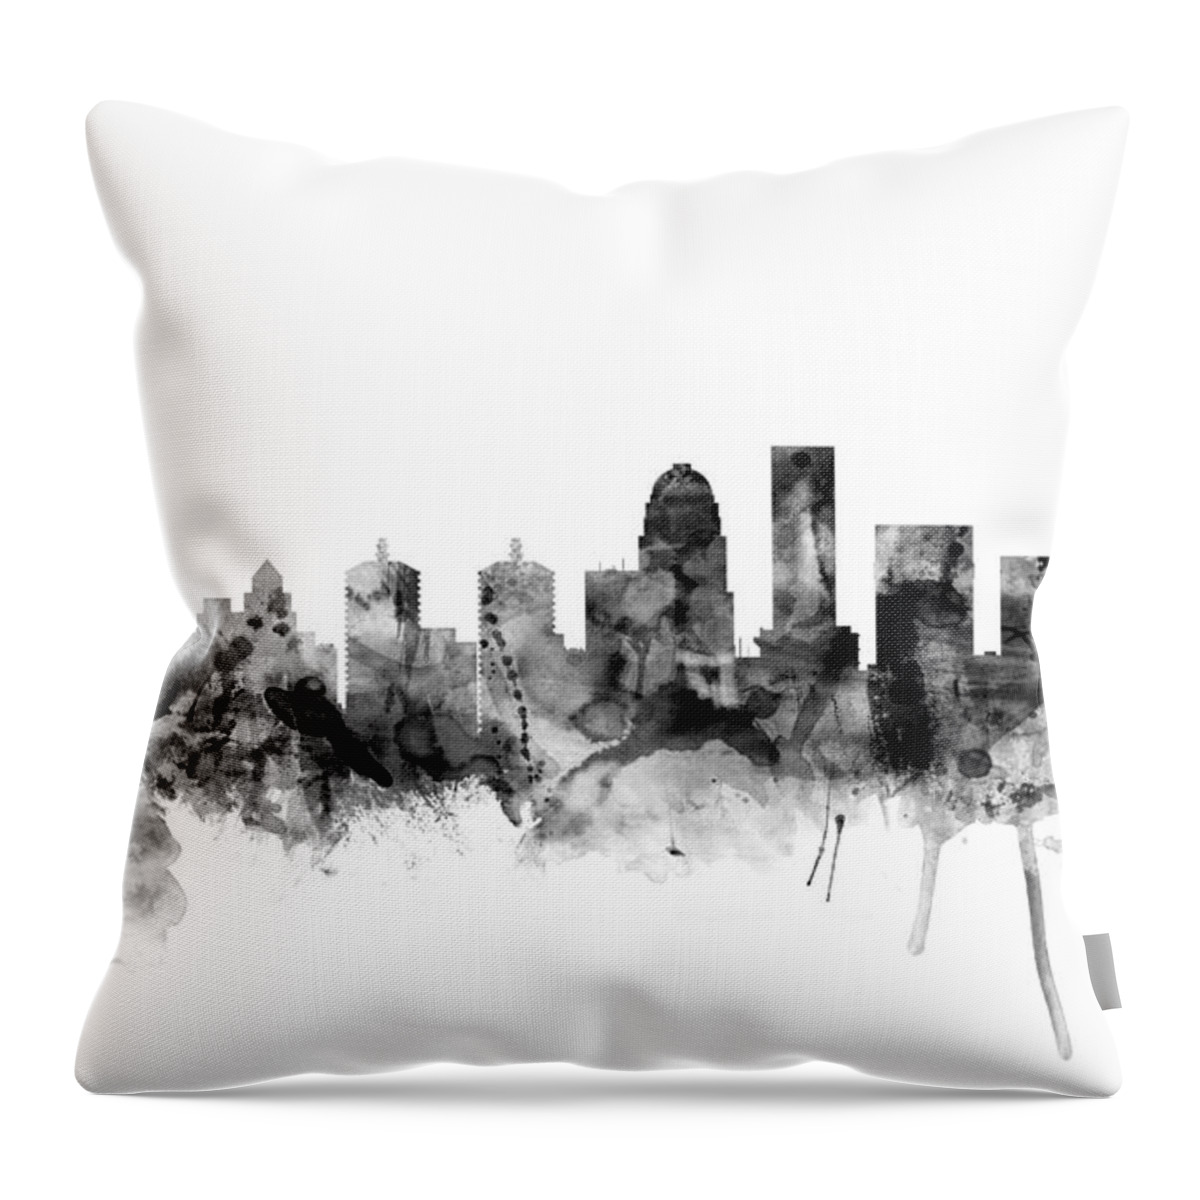 Watercolour Throw Pillow featuring the digital art Louisville Kentucky City Skyline by Michael Tompsett